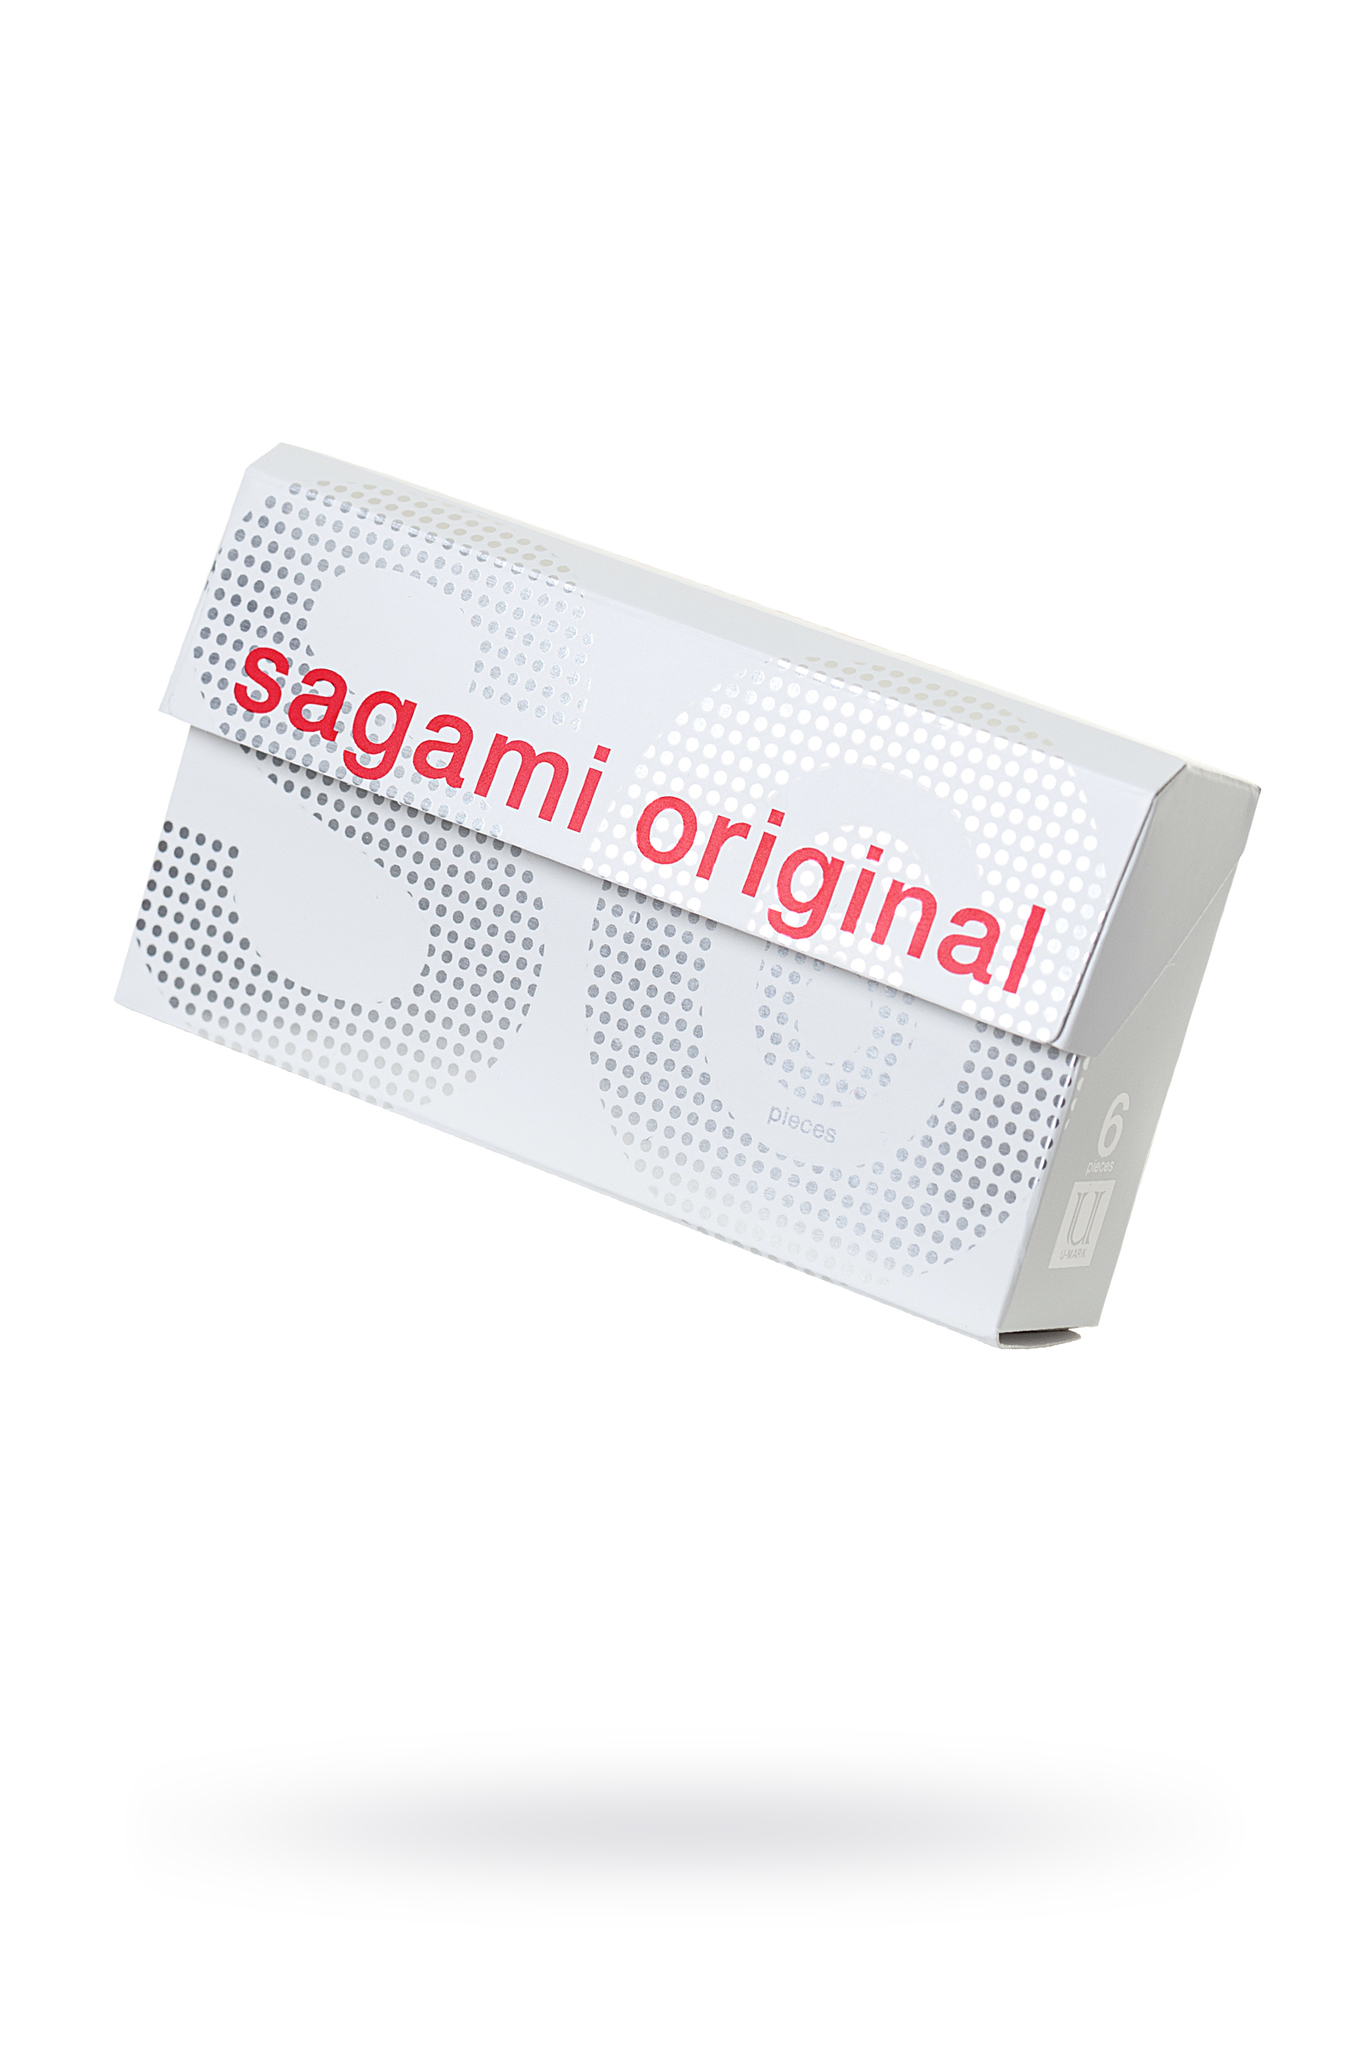 Презервативы Sagami, original 0.02, полиуретан, ультратонкие, гладкие, 19 см, 5,8 см, 6 шт. фото